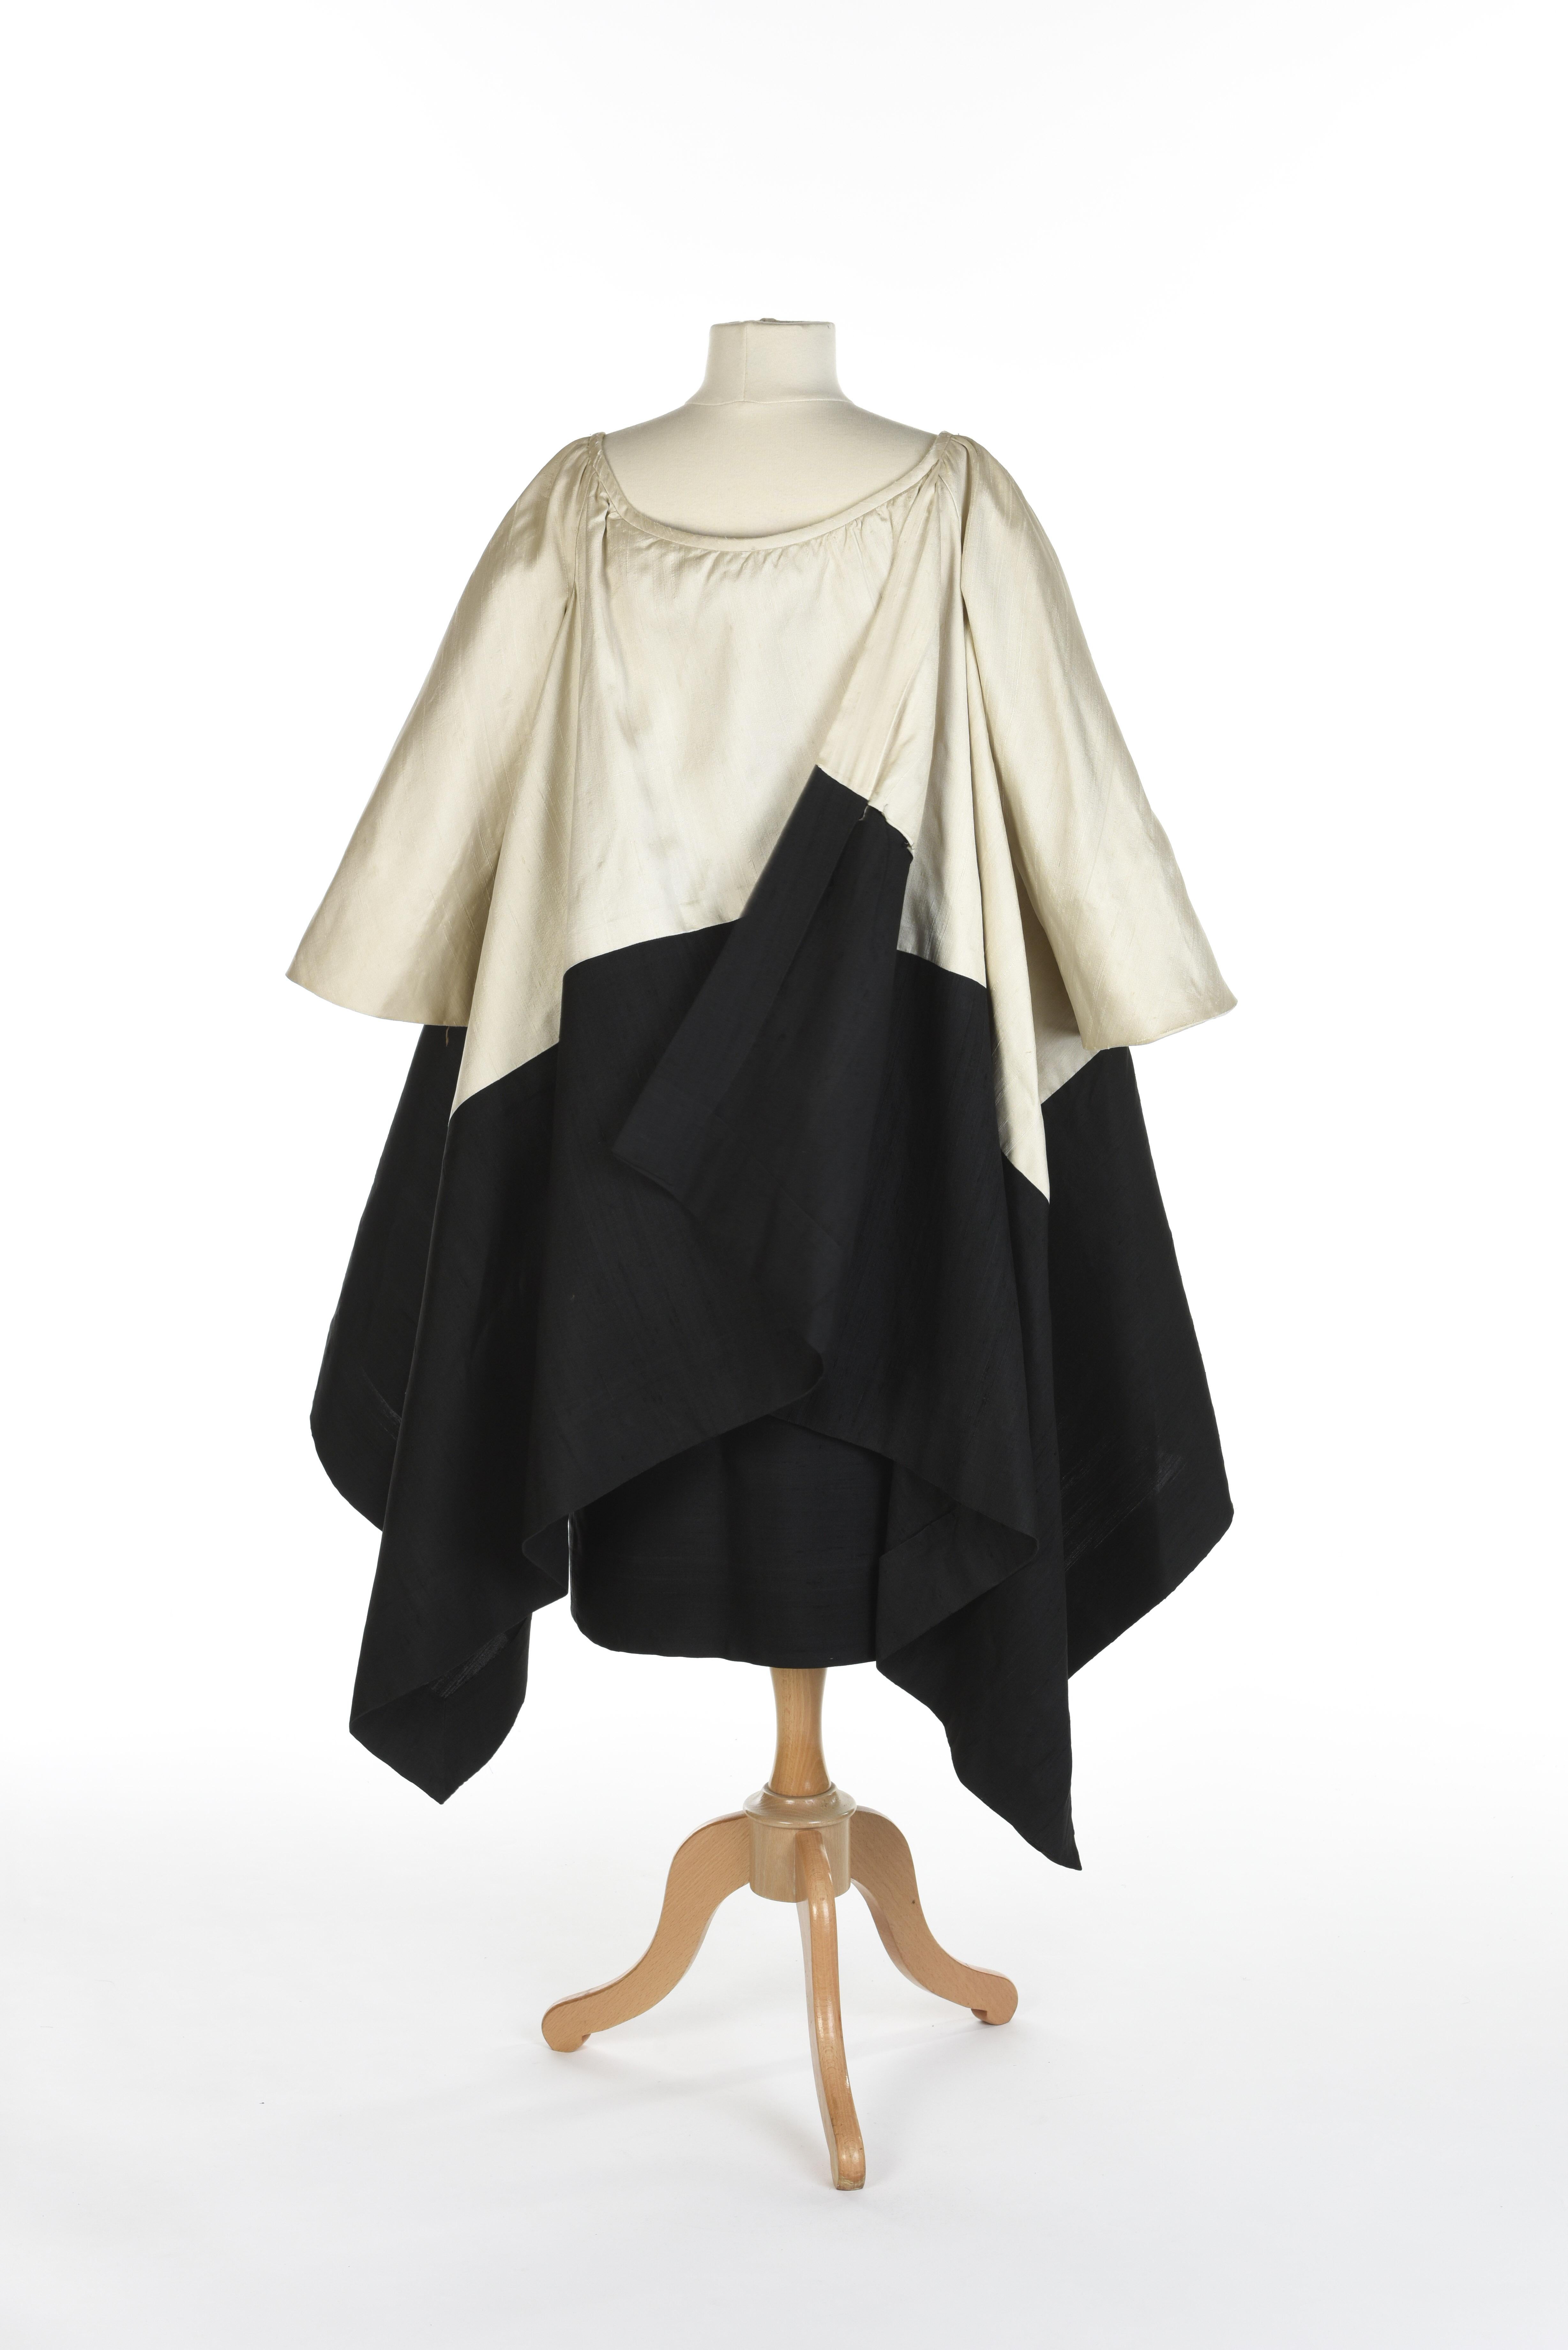 Ensemble de soirée Hubert de Givenchy Couture française en soie crème et noire Circa 1965 Pour femmes en vente